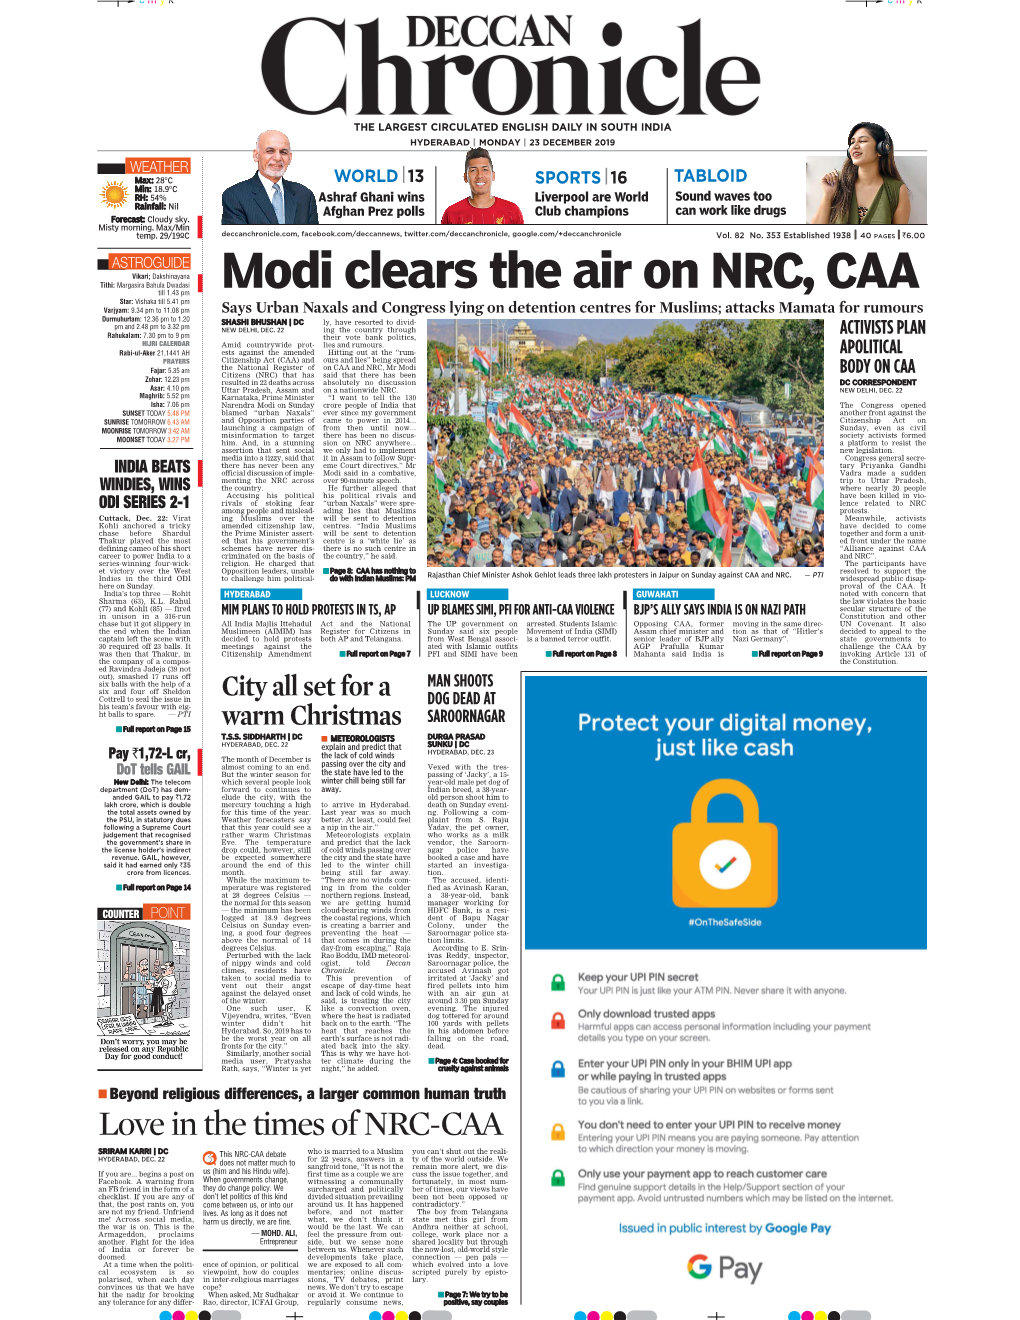 Modi Clears the Air on NRC